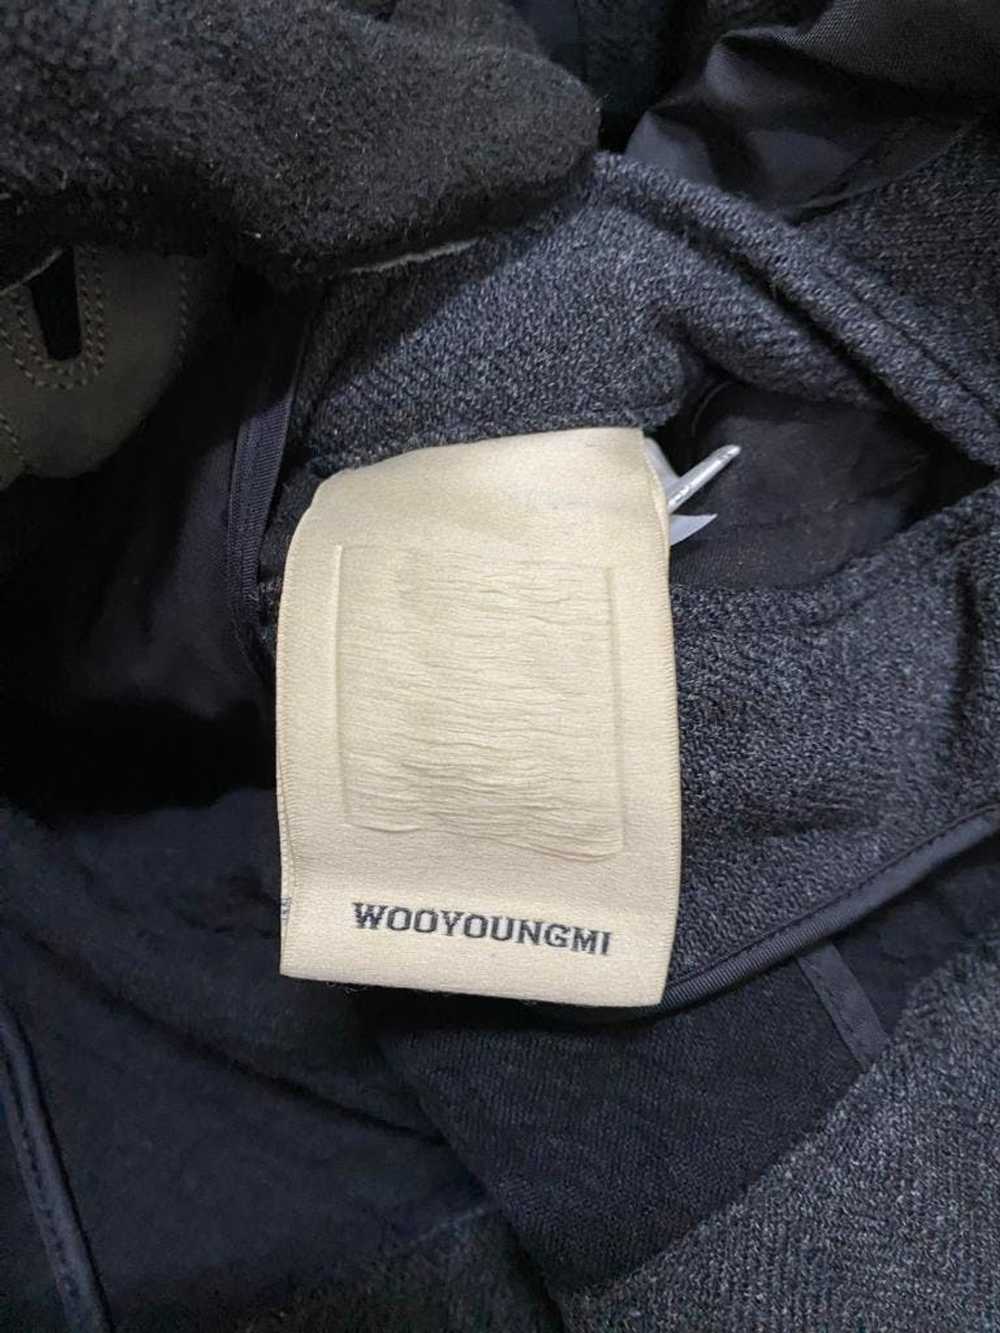 Wooyoungmi Wooyoungmi wool bombers jacket style - image 6